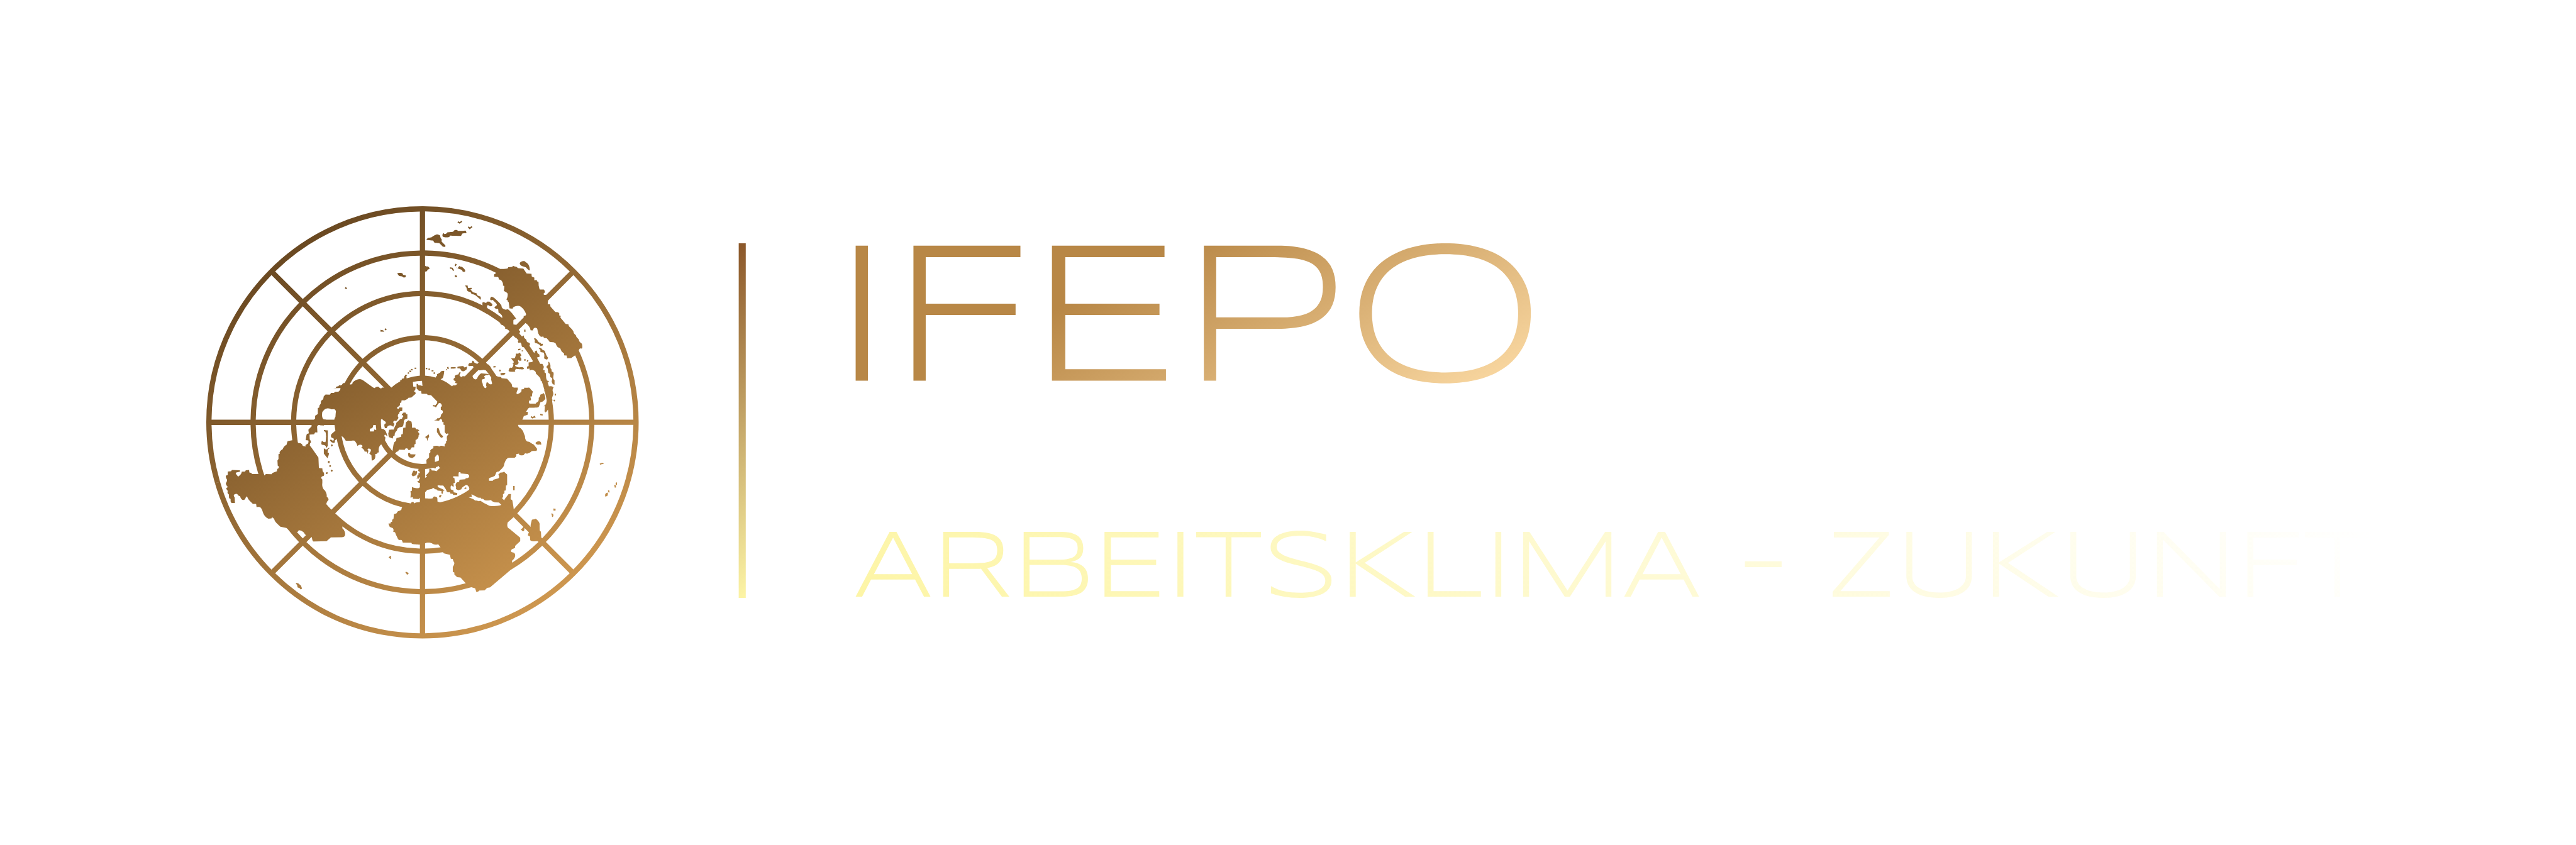 IFEPO